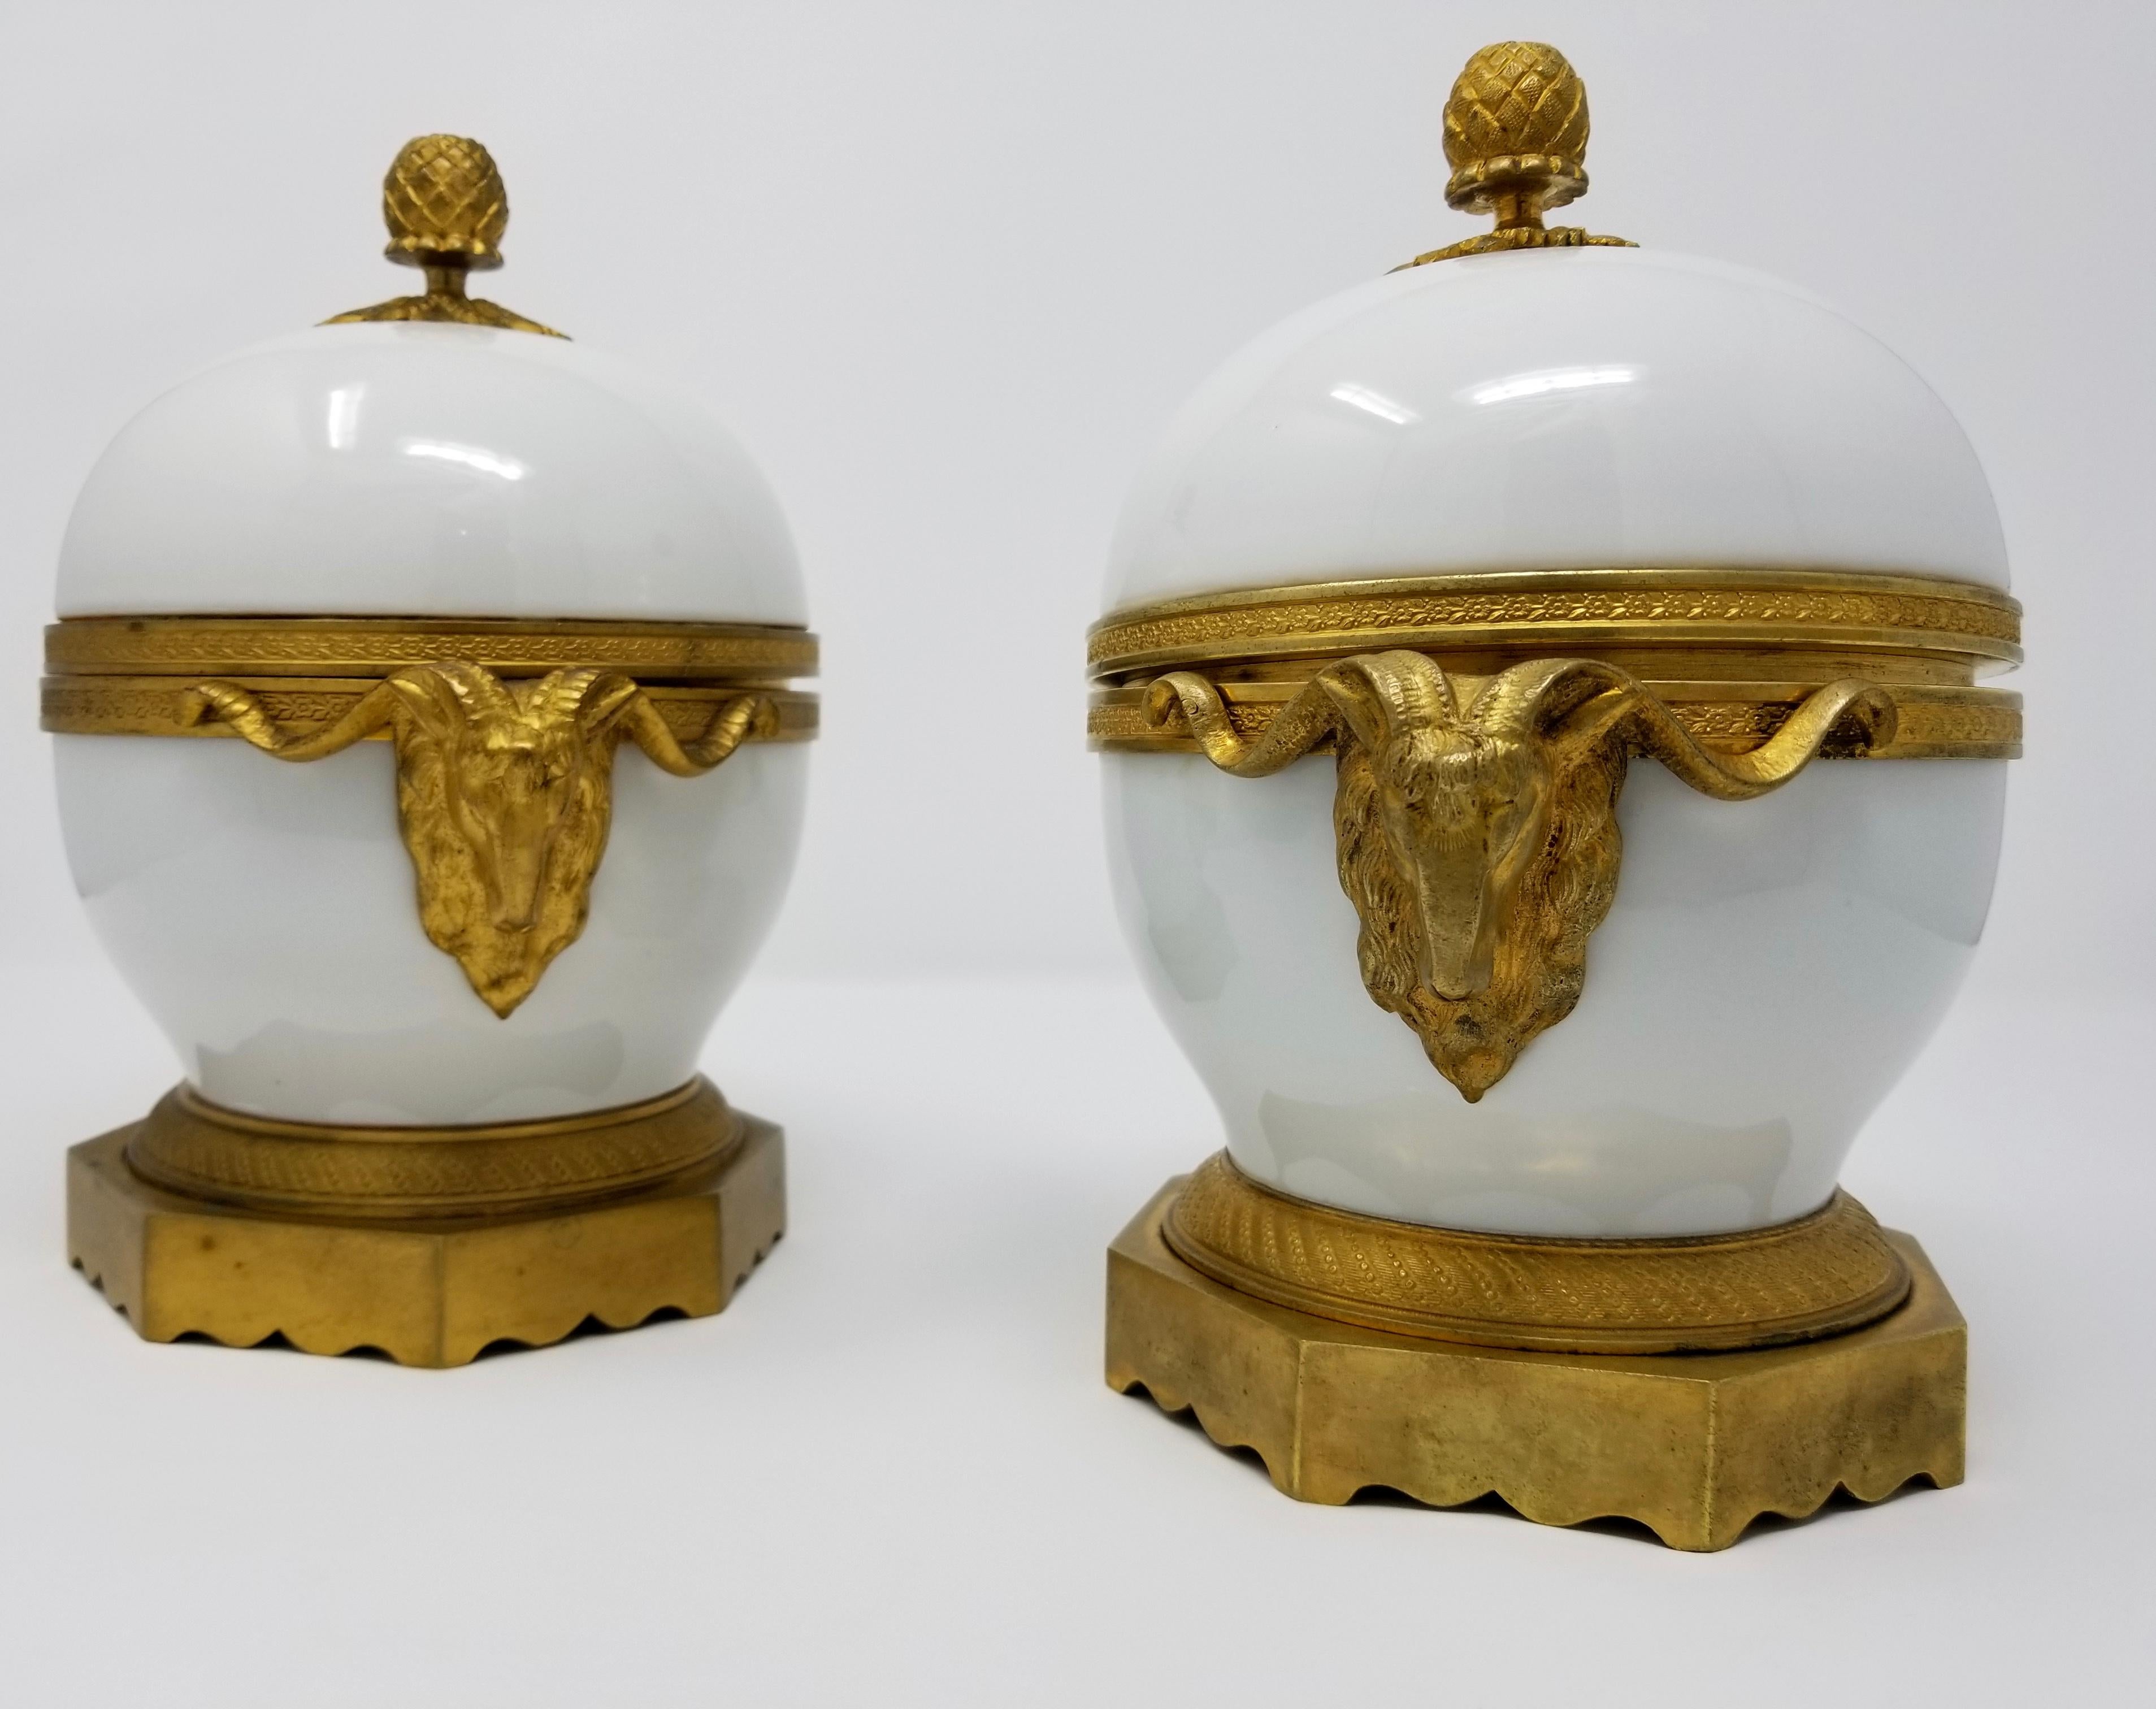 Ein schönes Paar französischer Schalen mit Henkel aus weißem Porzellan und Doré-Bronze im Louis-XVI-Stil aus dem 19. Jede Schale ist aus feinstem französischem opak-weißem Porzellan, mit wunderschönen, handziselierten Doré-Bronze-Beschlägen, Henkeln